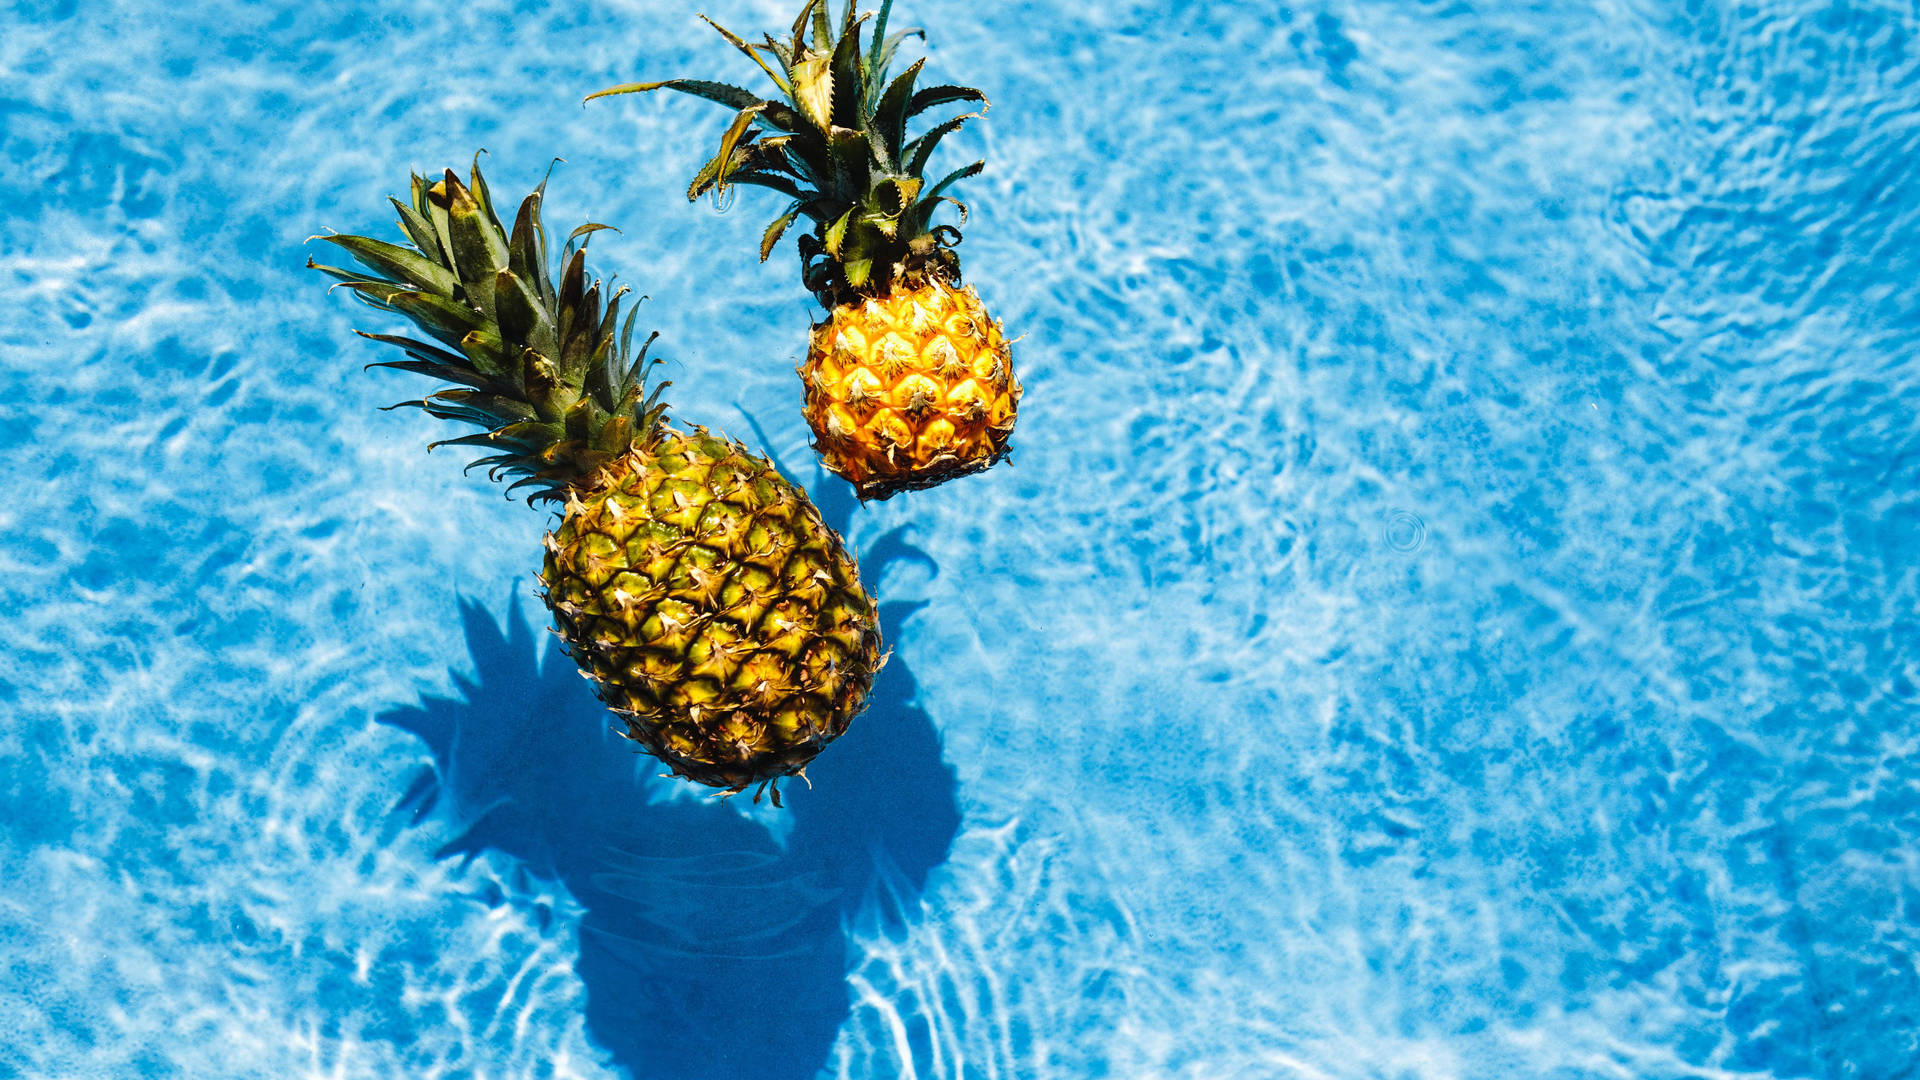 Pineapples In Swimming Pool Wallpaper